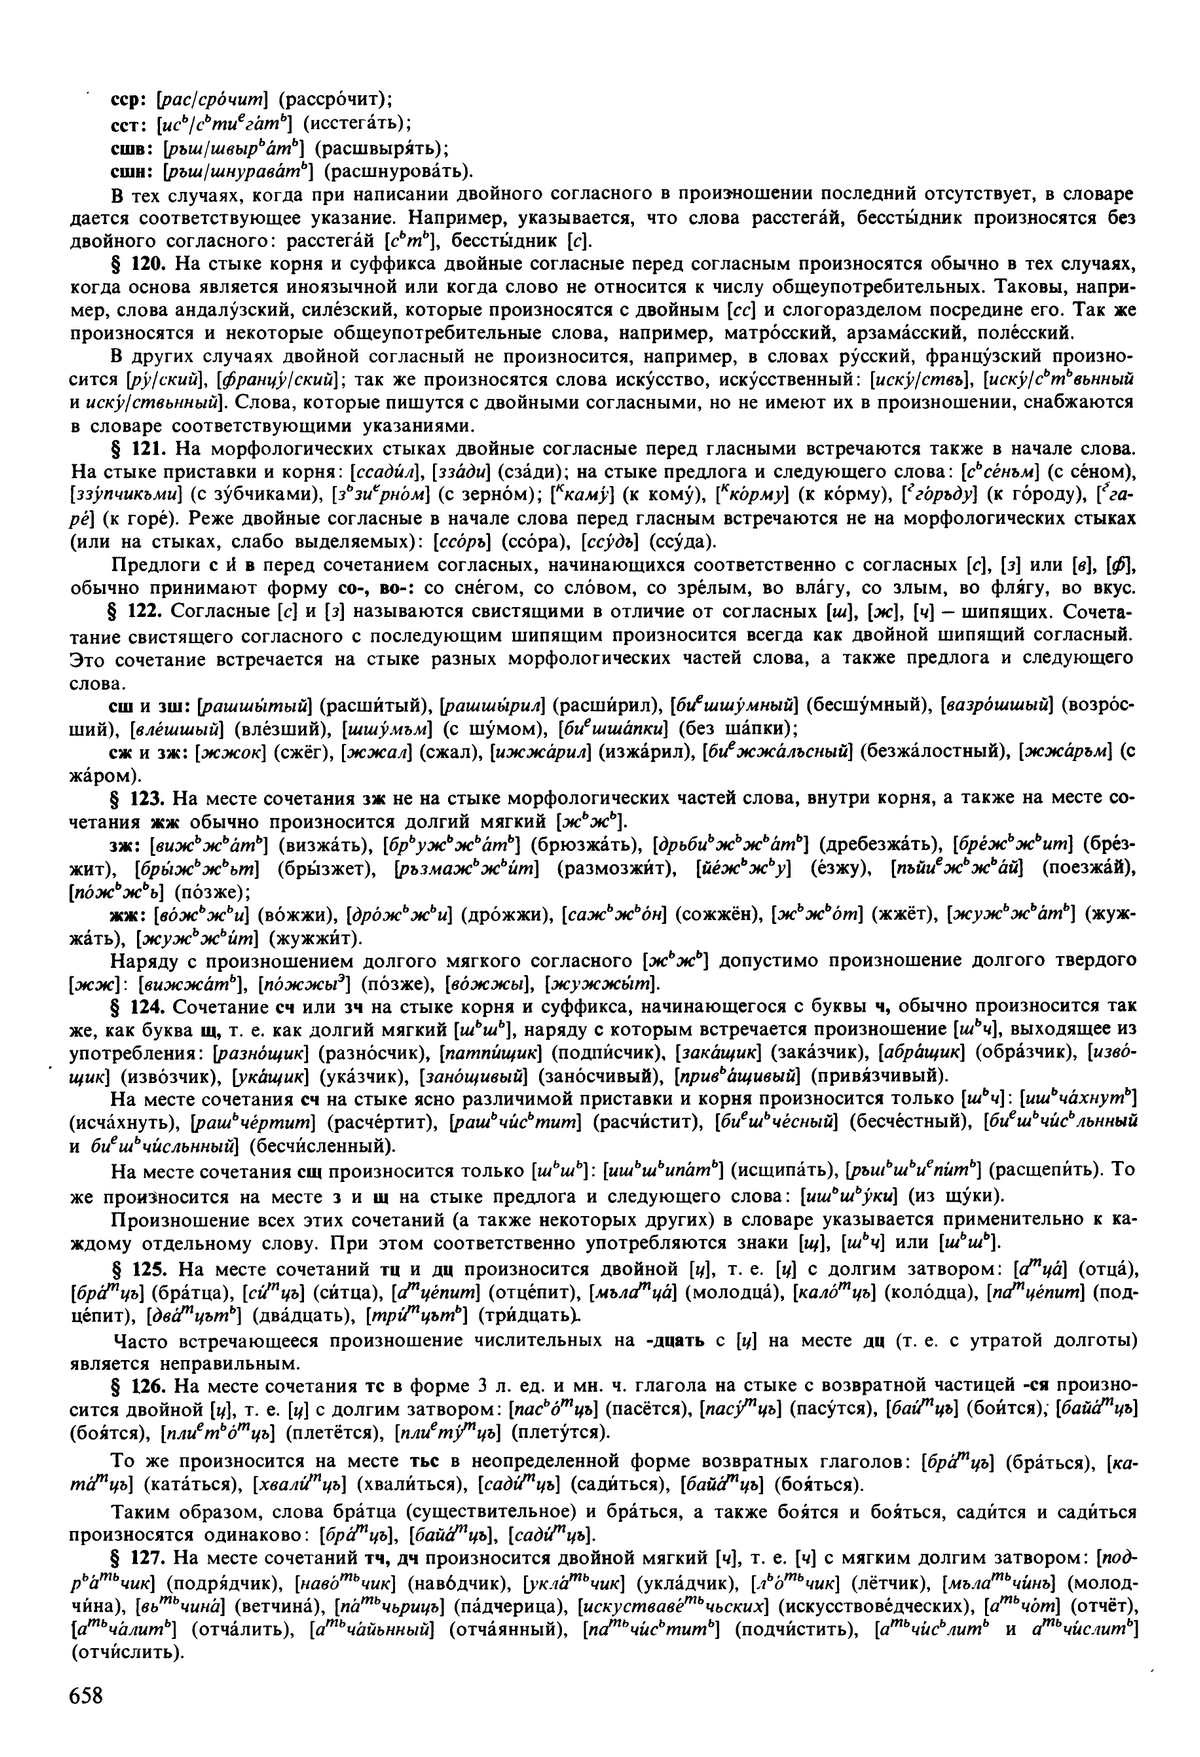 Фотокопия pdf / скан страницы 658 орфоэпического словаря под редакцией Аванесова (5 издание, 1989 год)